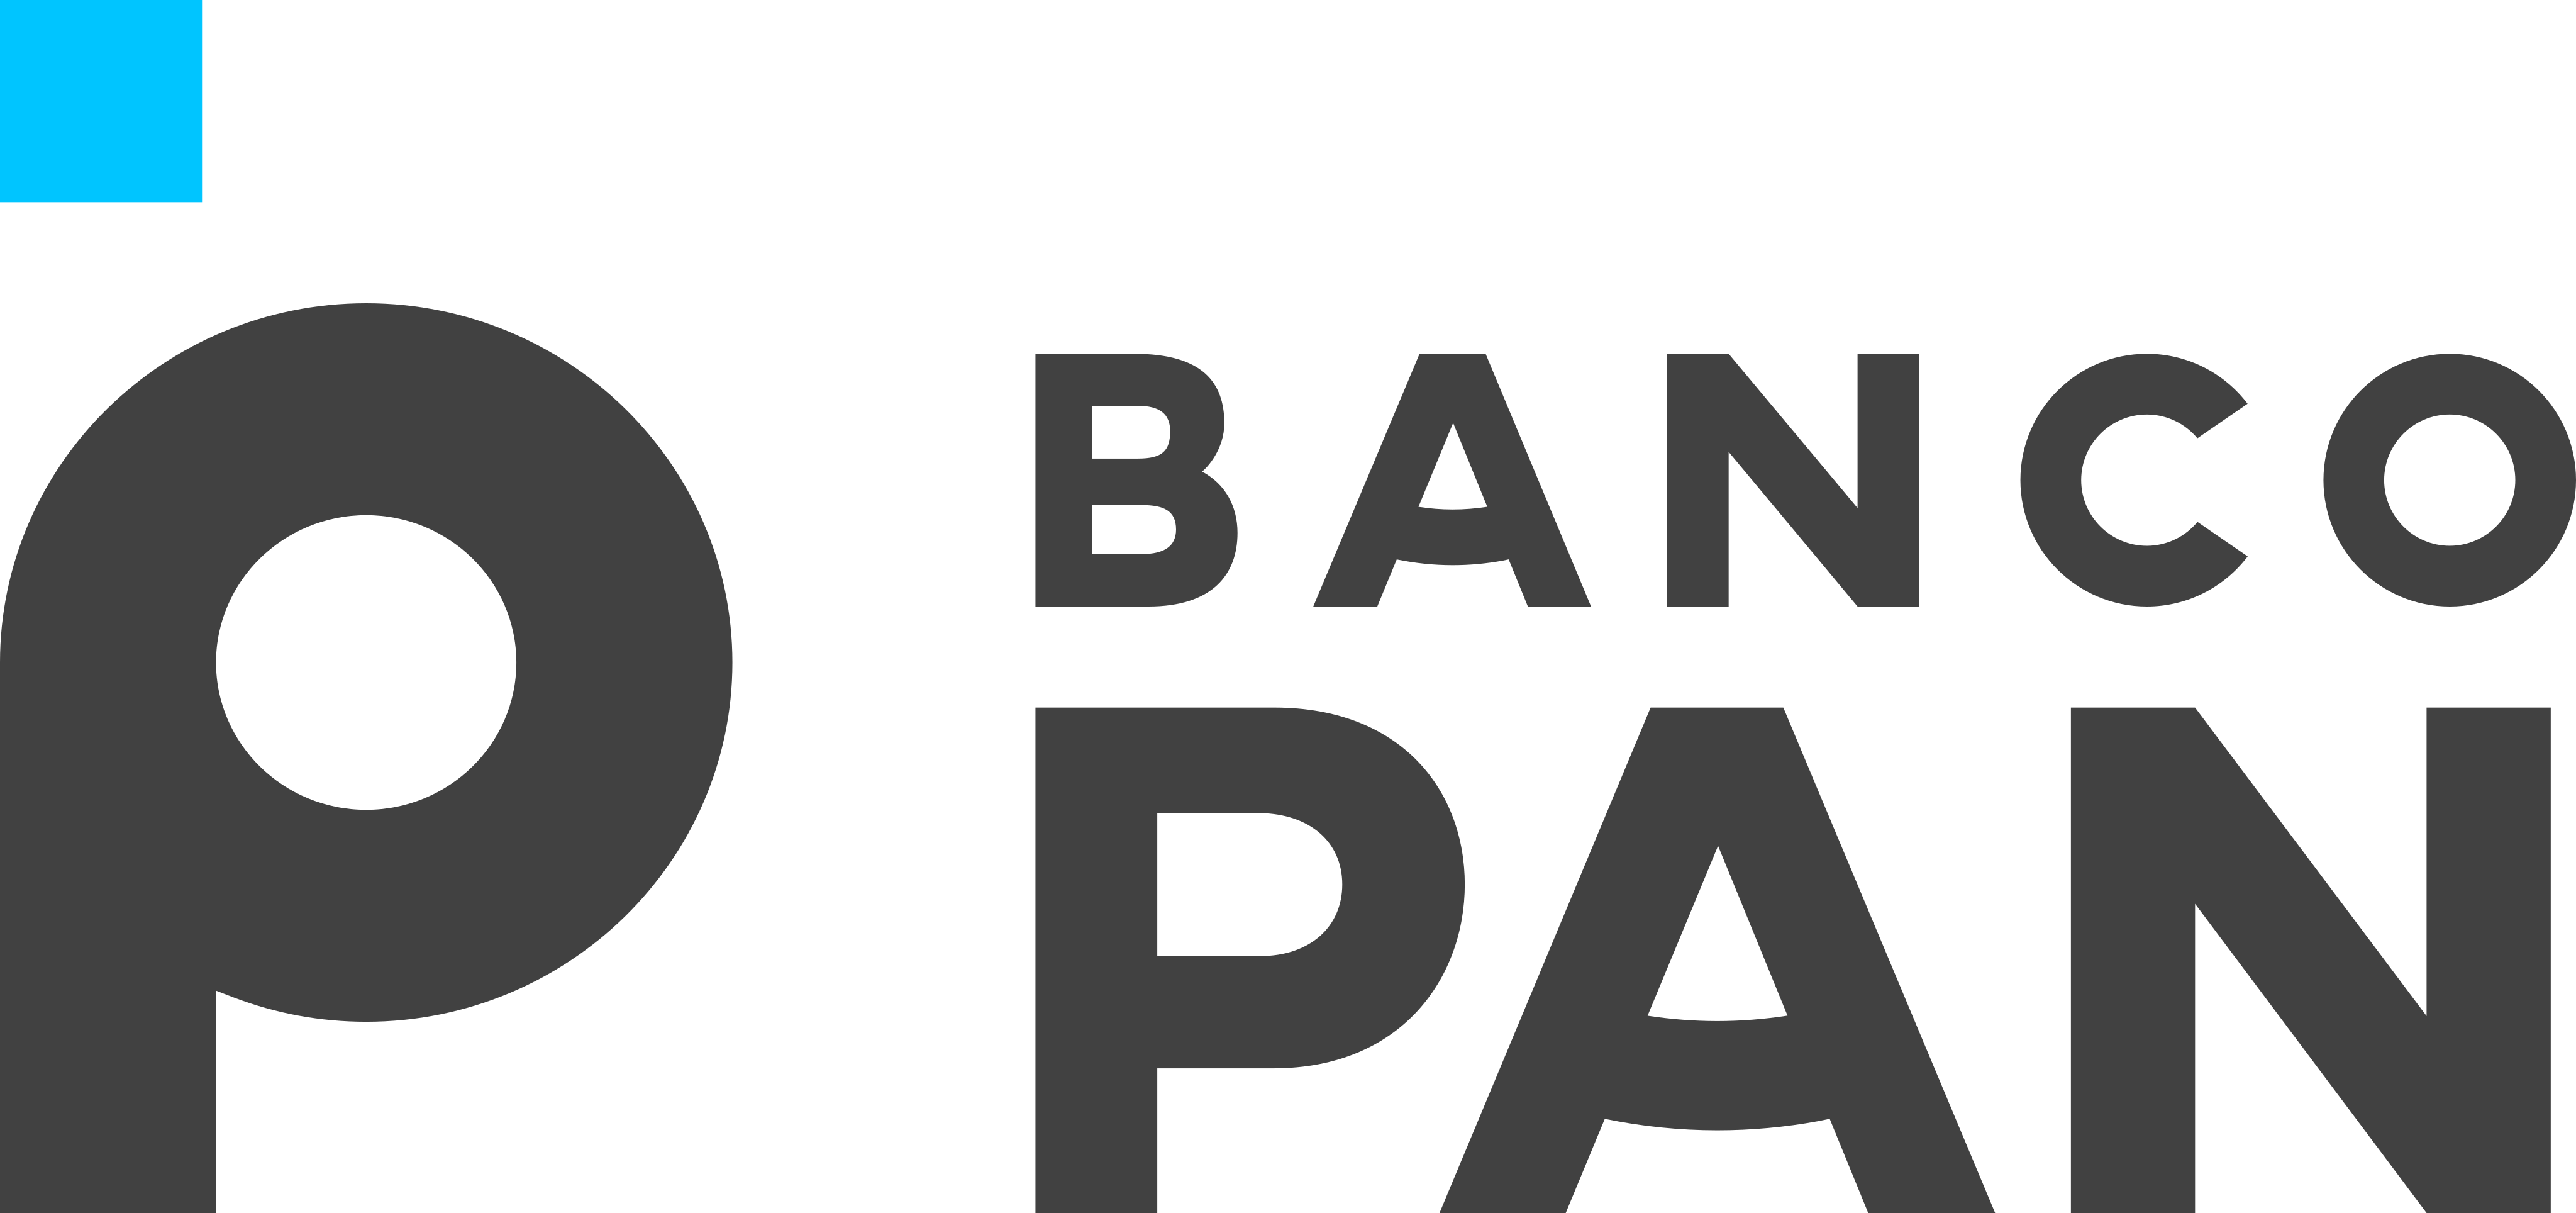 Banco banco pan